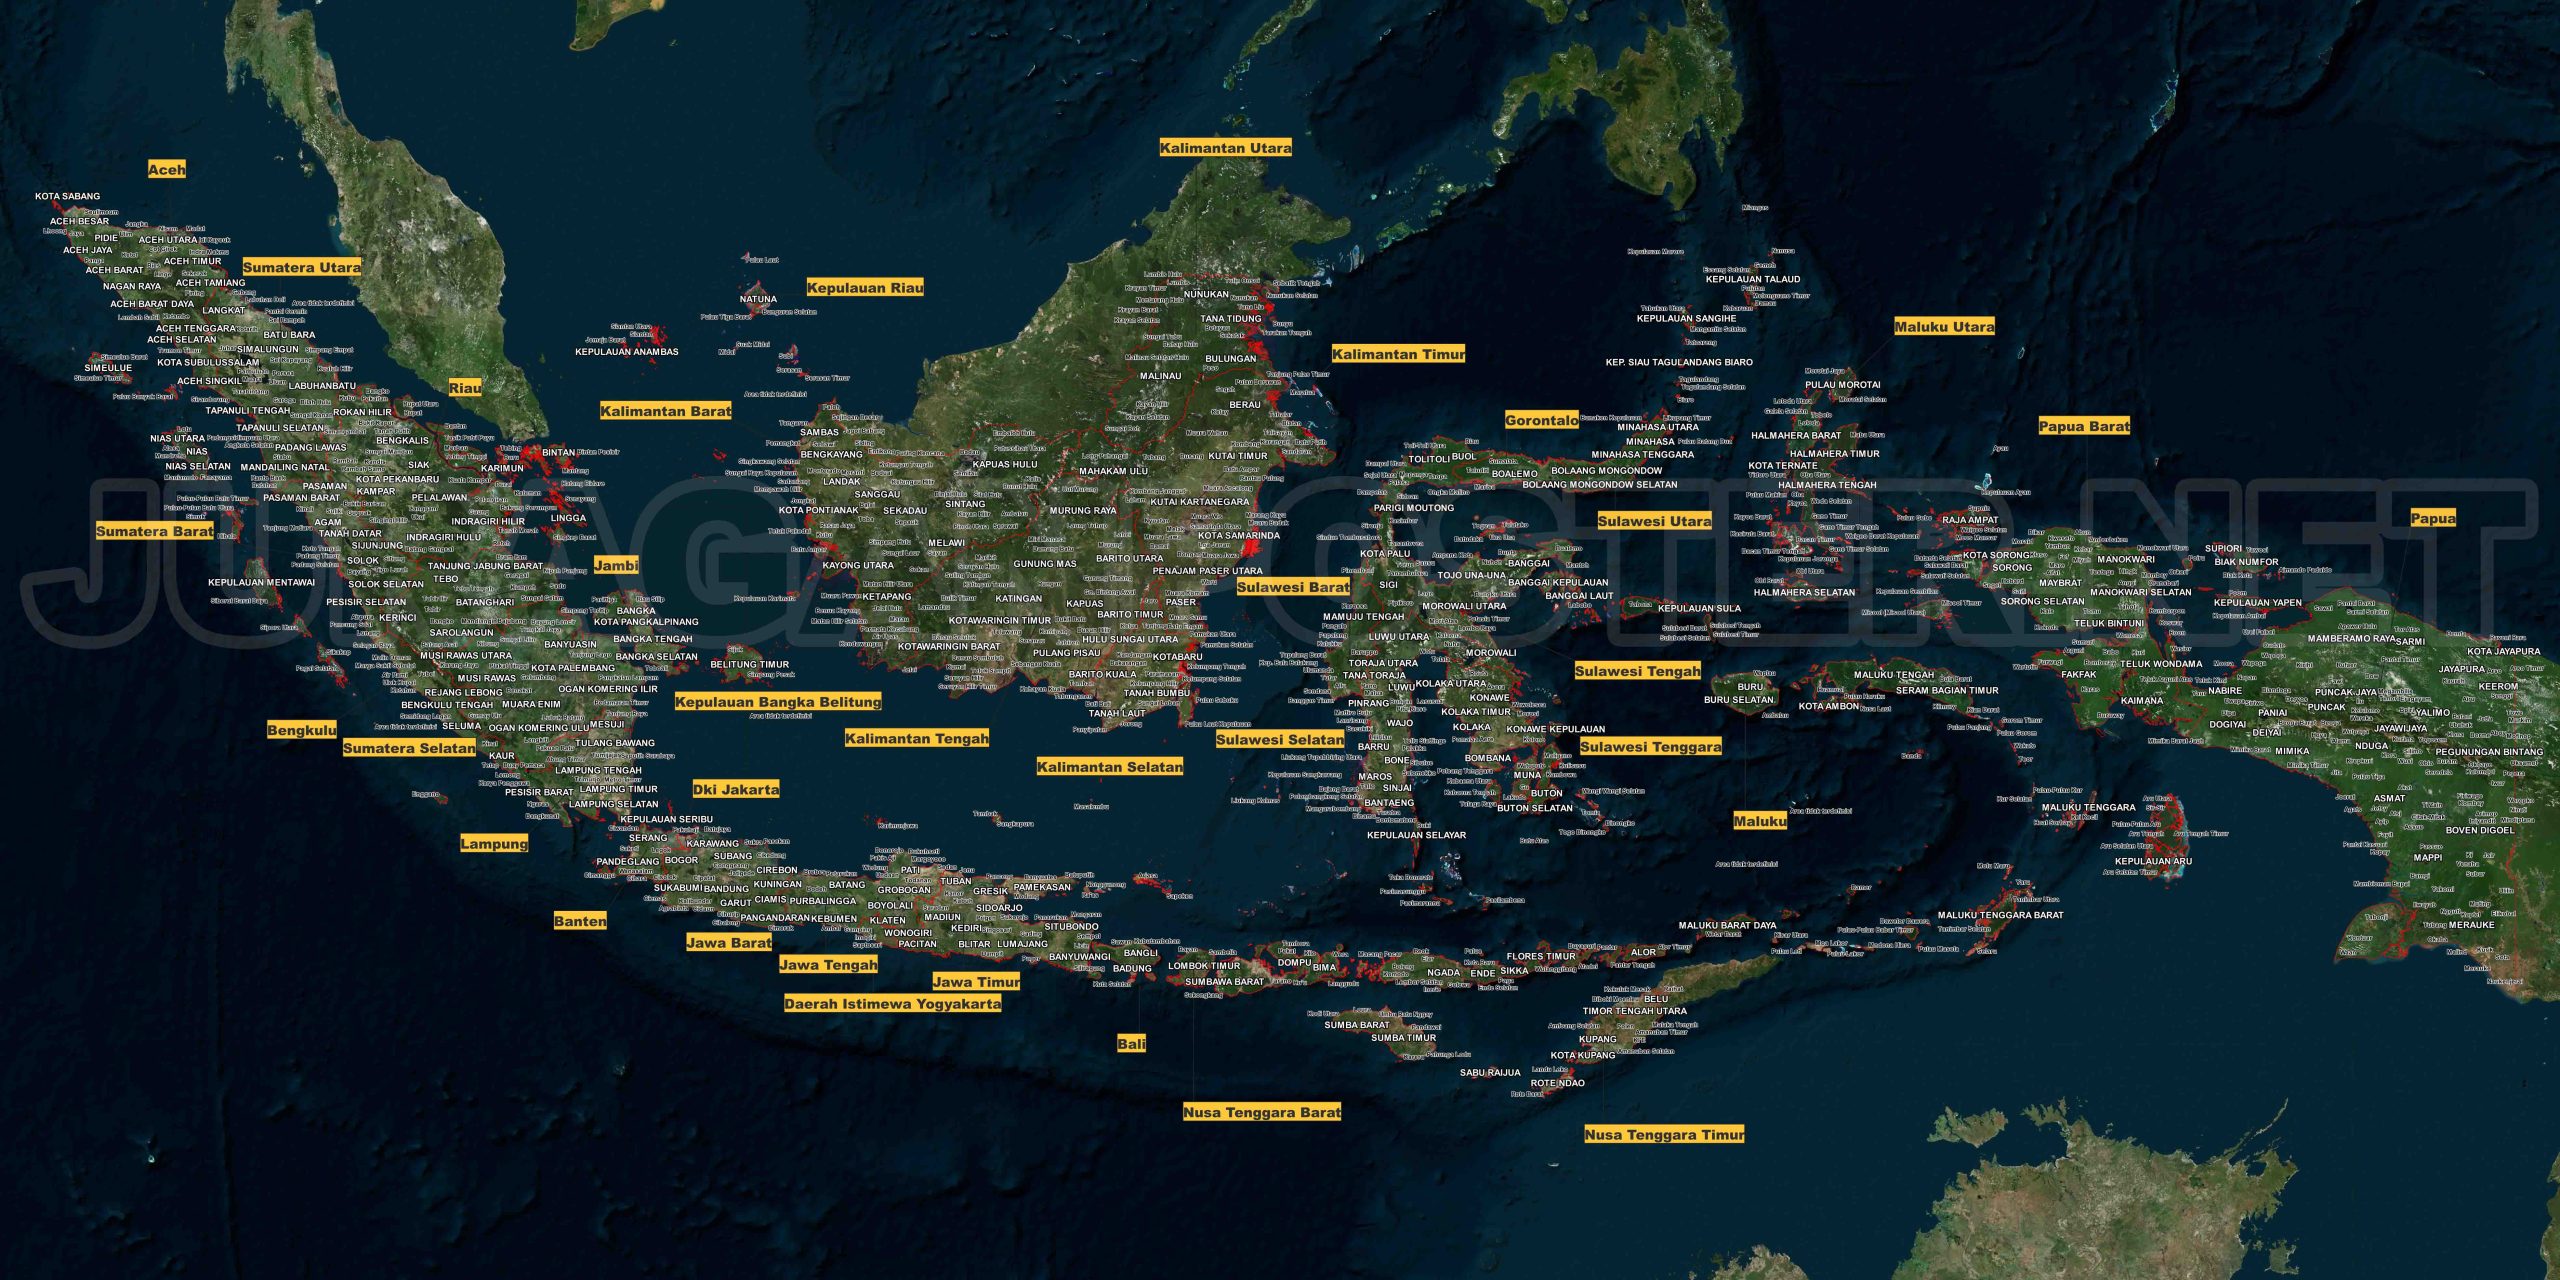 Peta Taman Nasional di Indonesia: Keindahan Alam yang Dilindungi